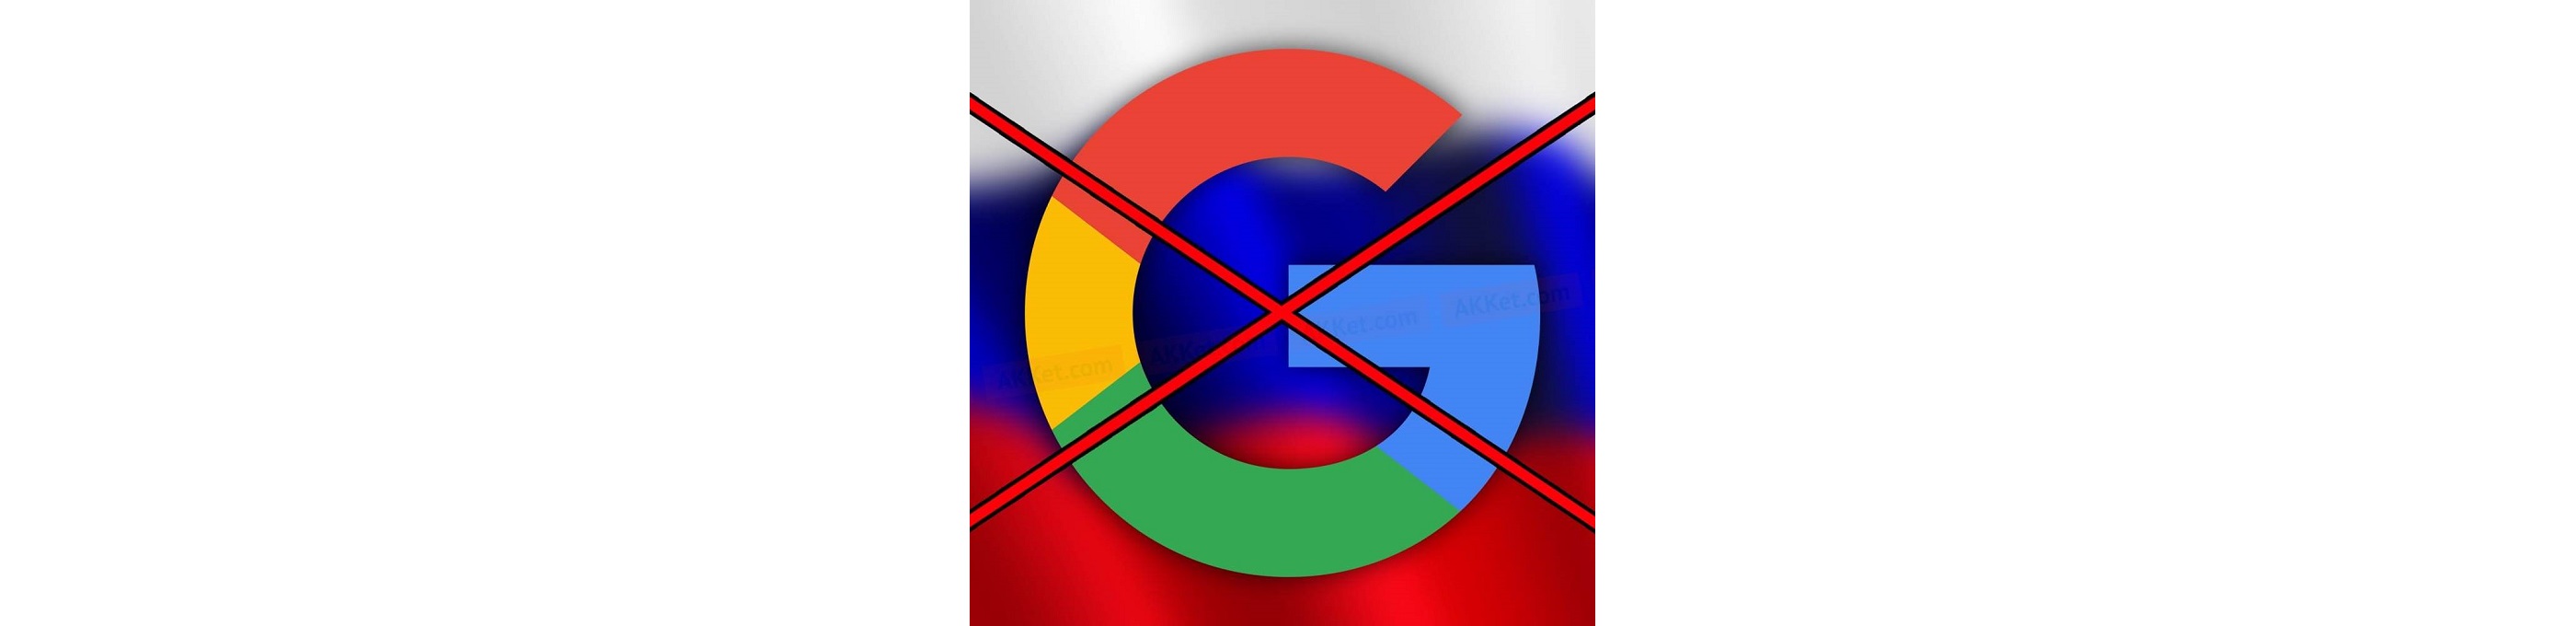 Согласно полученной информации, в России могут ввести более серьезные меры воздействия, касающиеся иностранных интернет компаний. В частности обсуждается возможность блокировки Google.